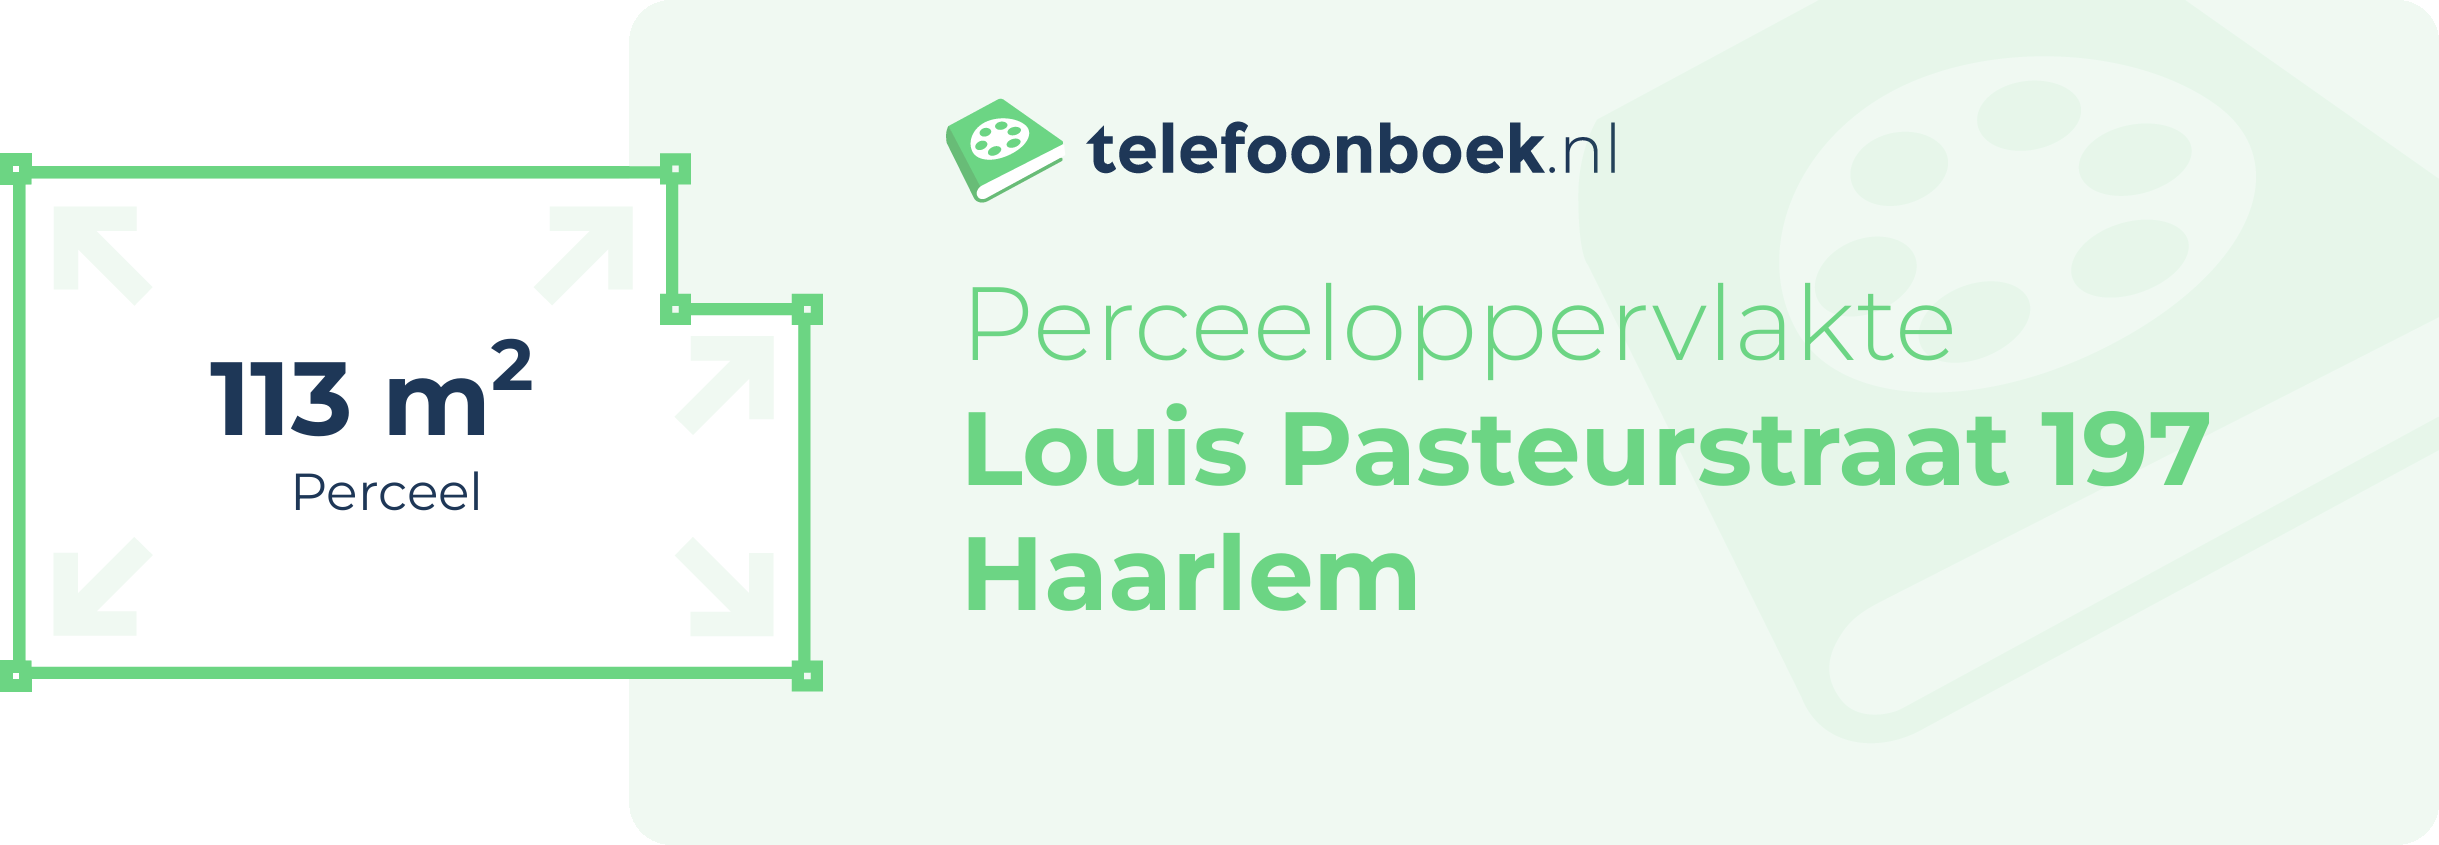 Perceeloppervlakte Louis Pasteurstraat 197 Haarlem